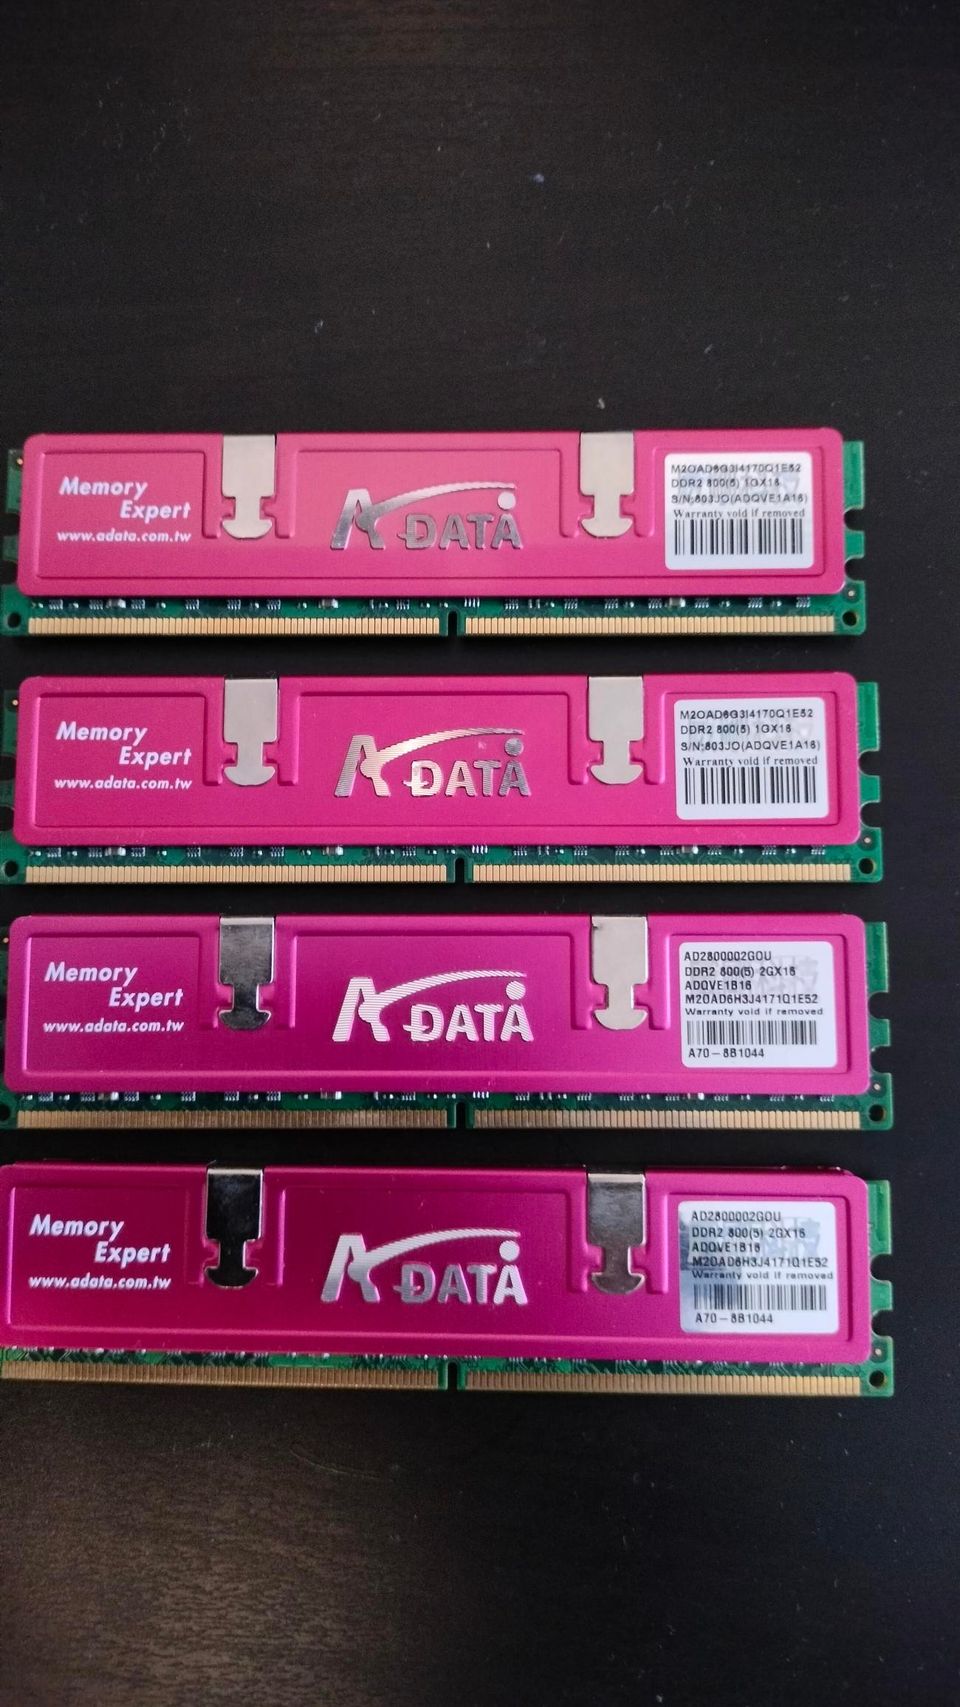 A-data DDR2 800mhz 6GB keskusmuistia